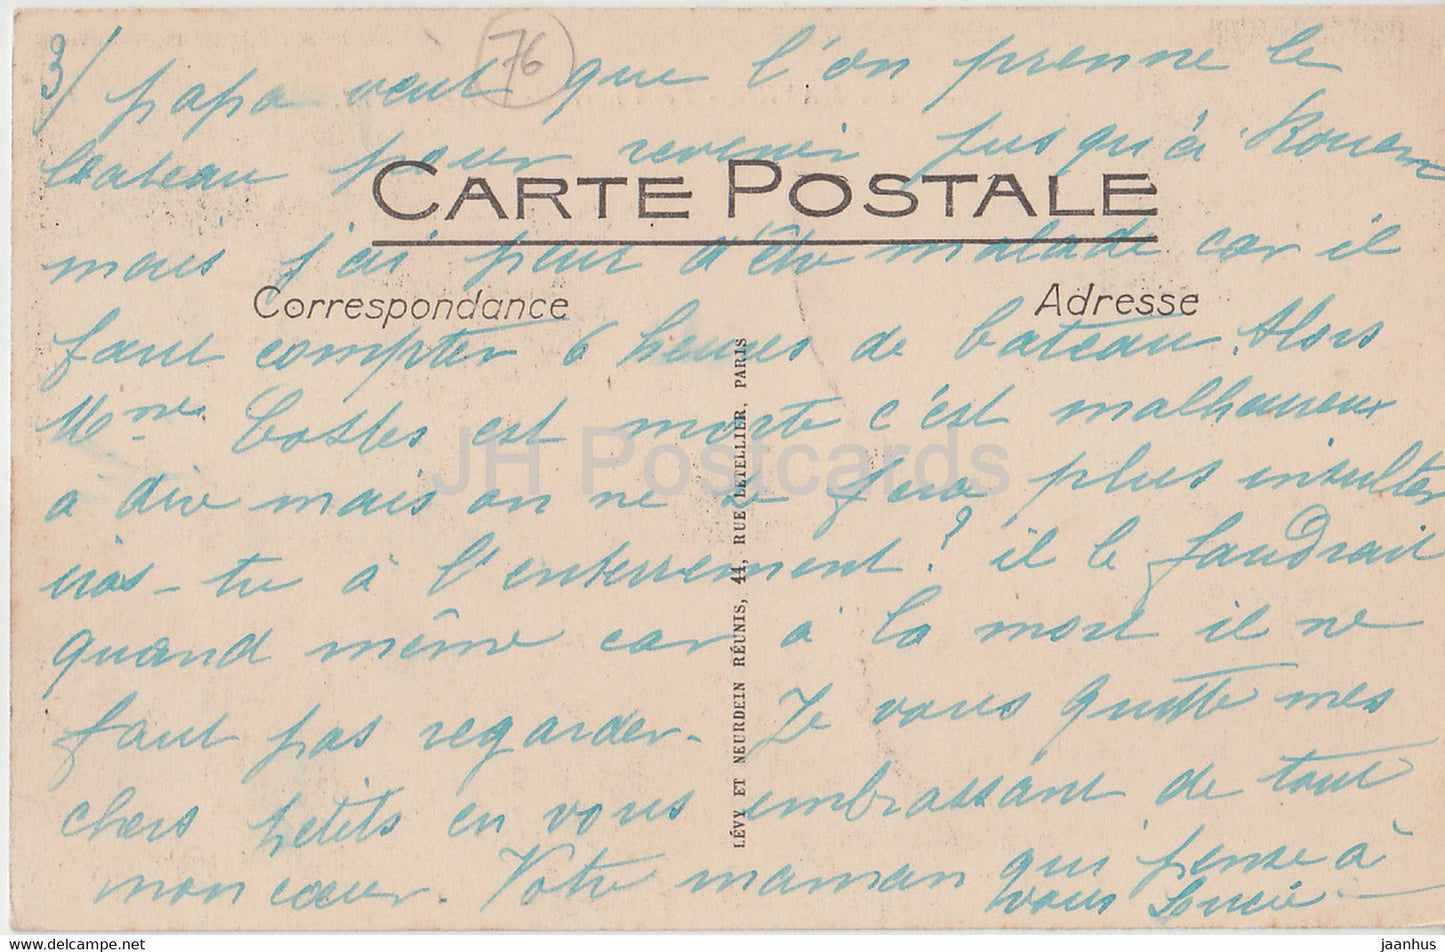 Le Havre - Les Phares de la Heve - phare - 63 - carte postale ancienne - France - occasion